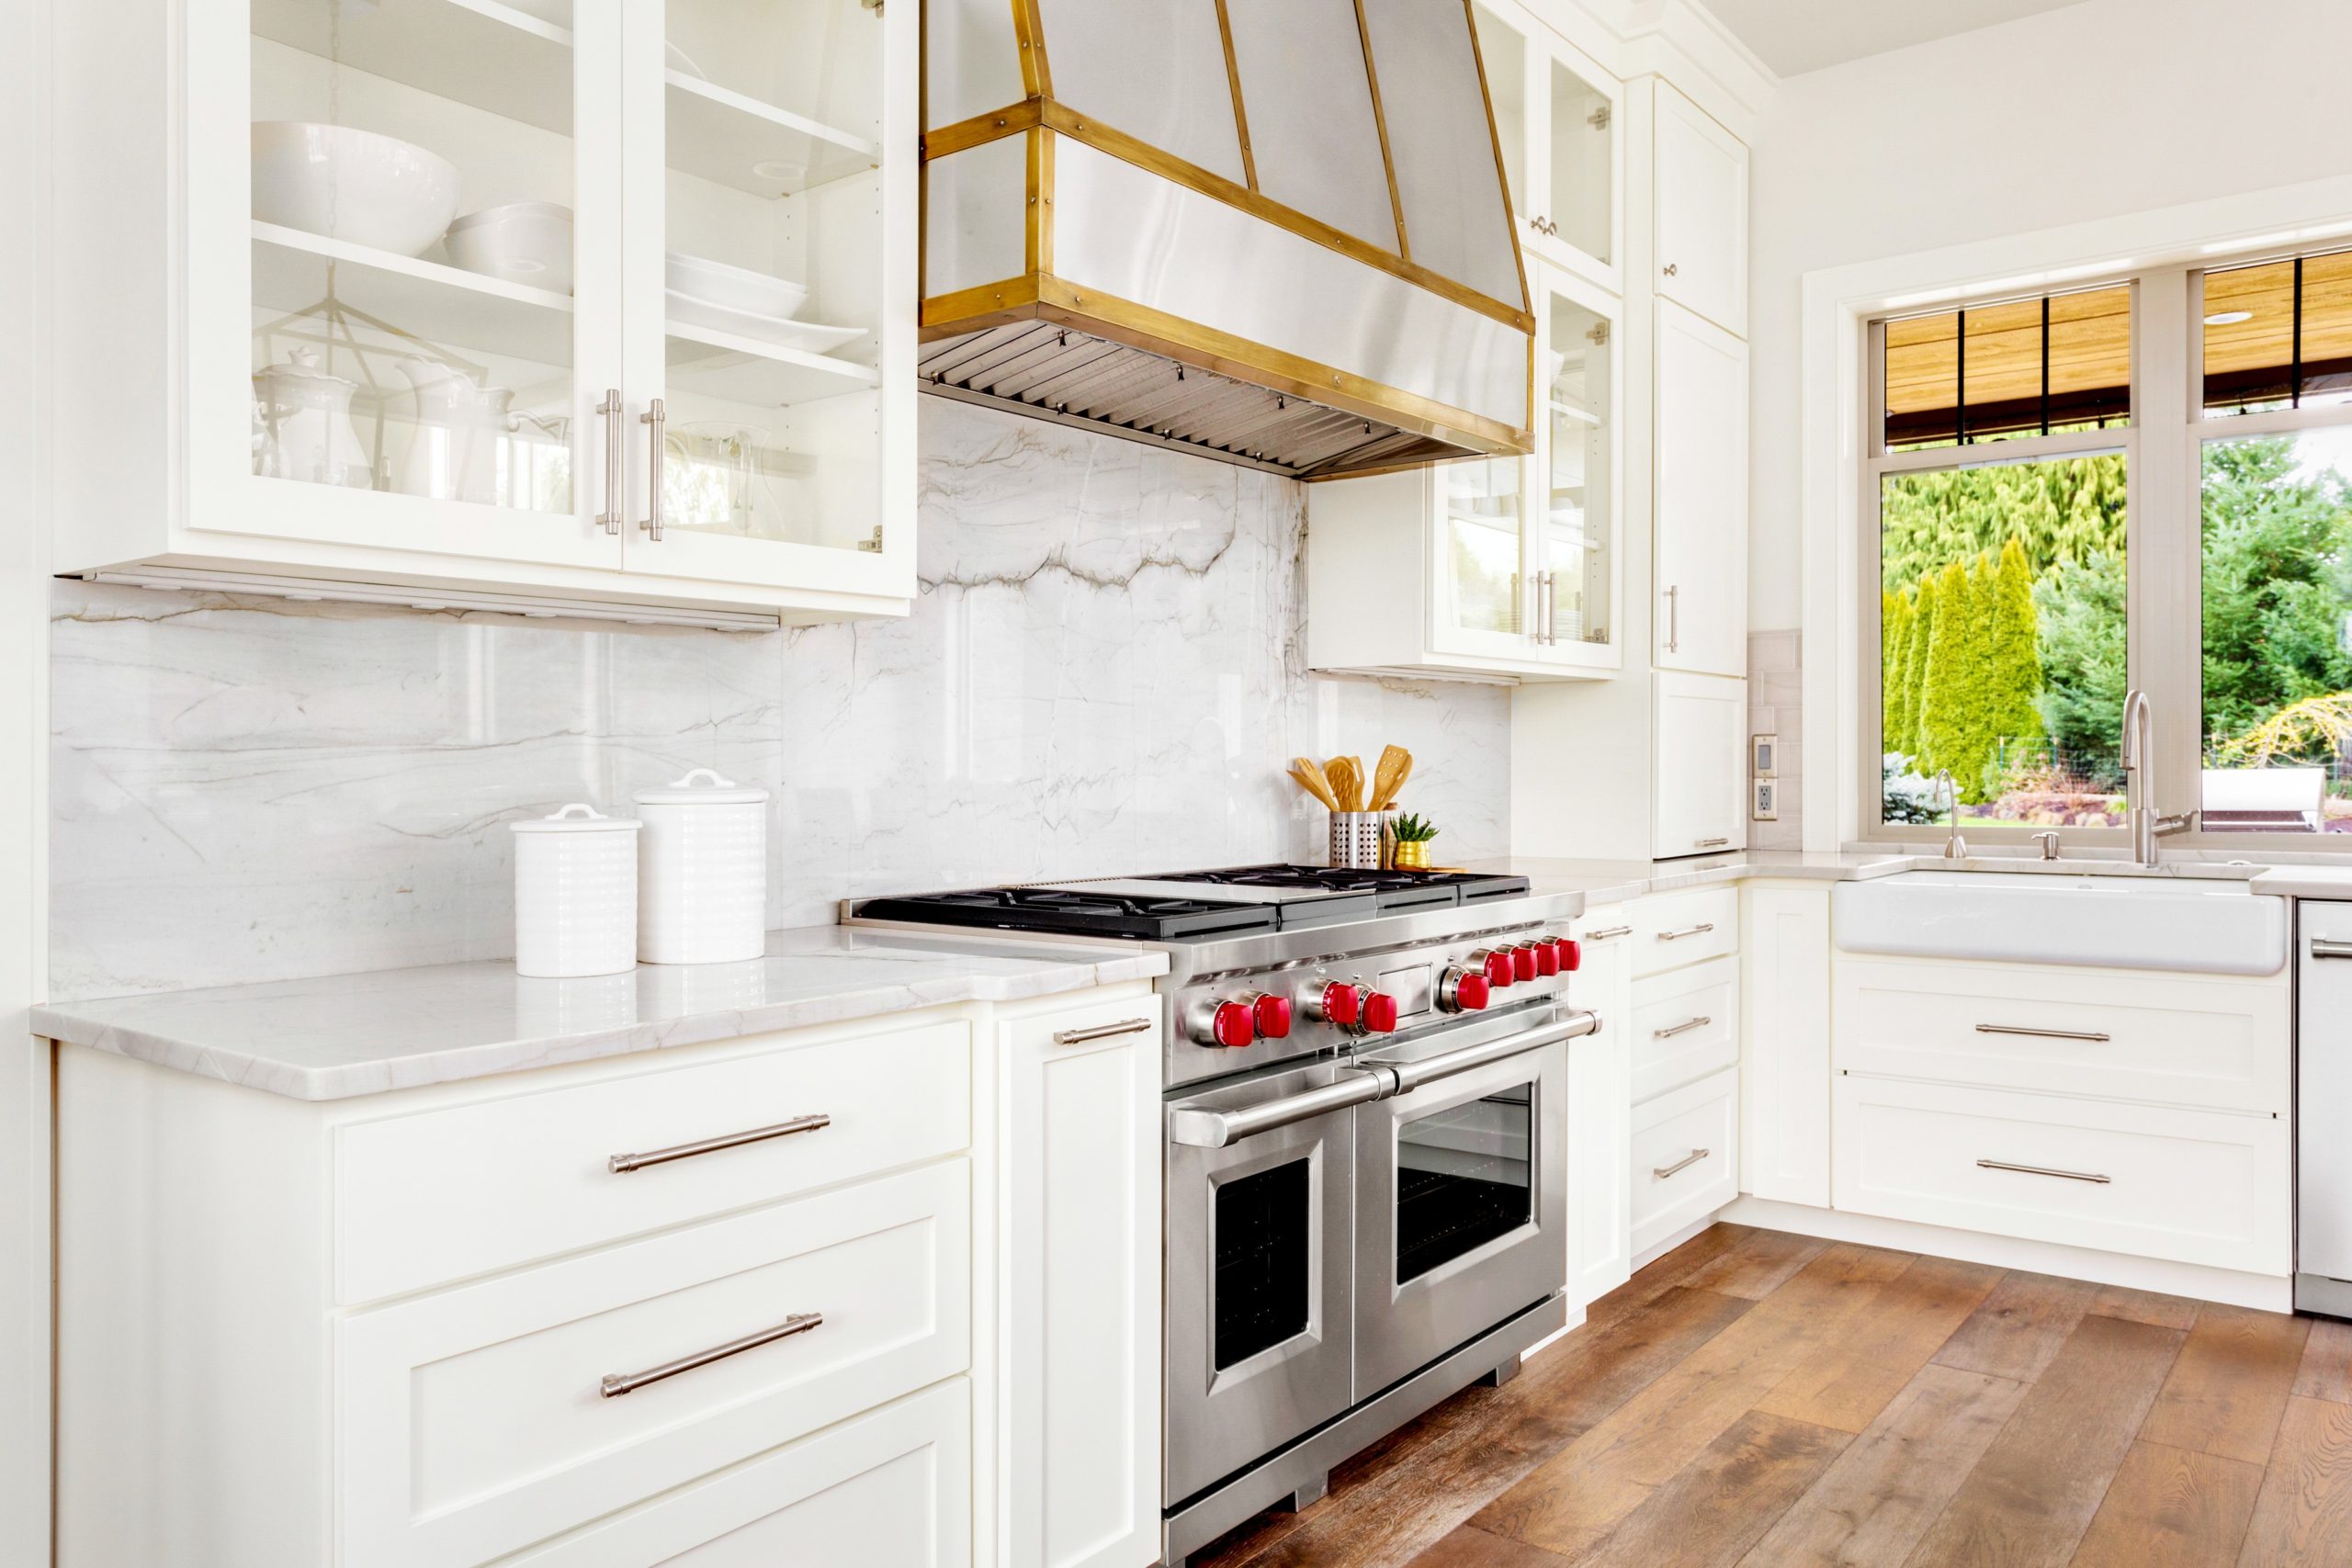 <img src="white.jpg" alt="white glass kitchen cabinets"/> 